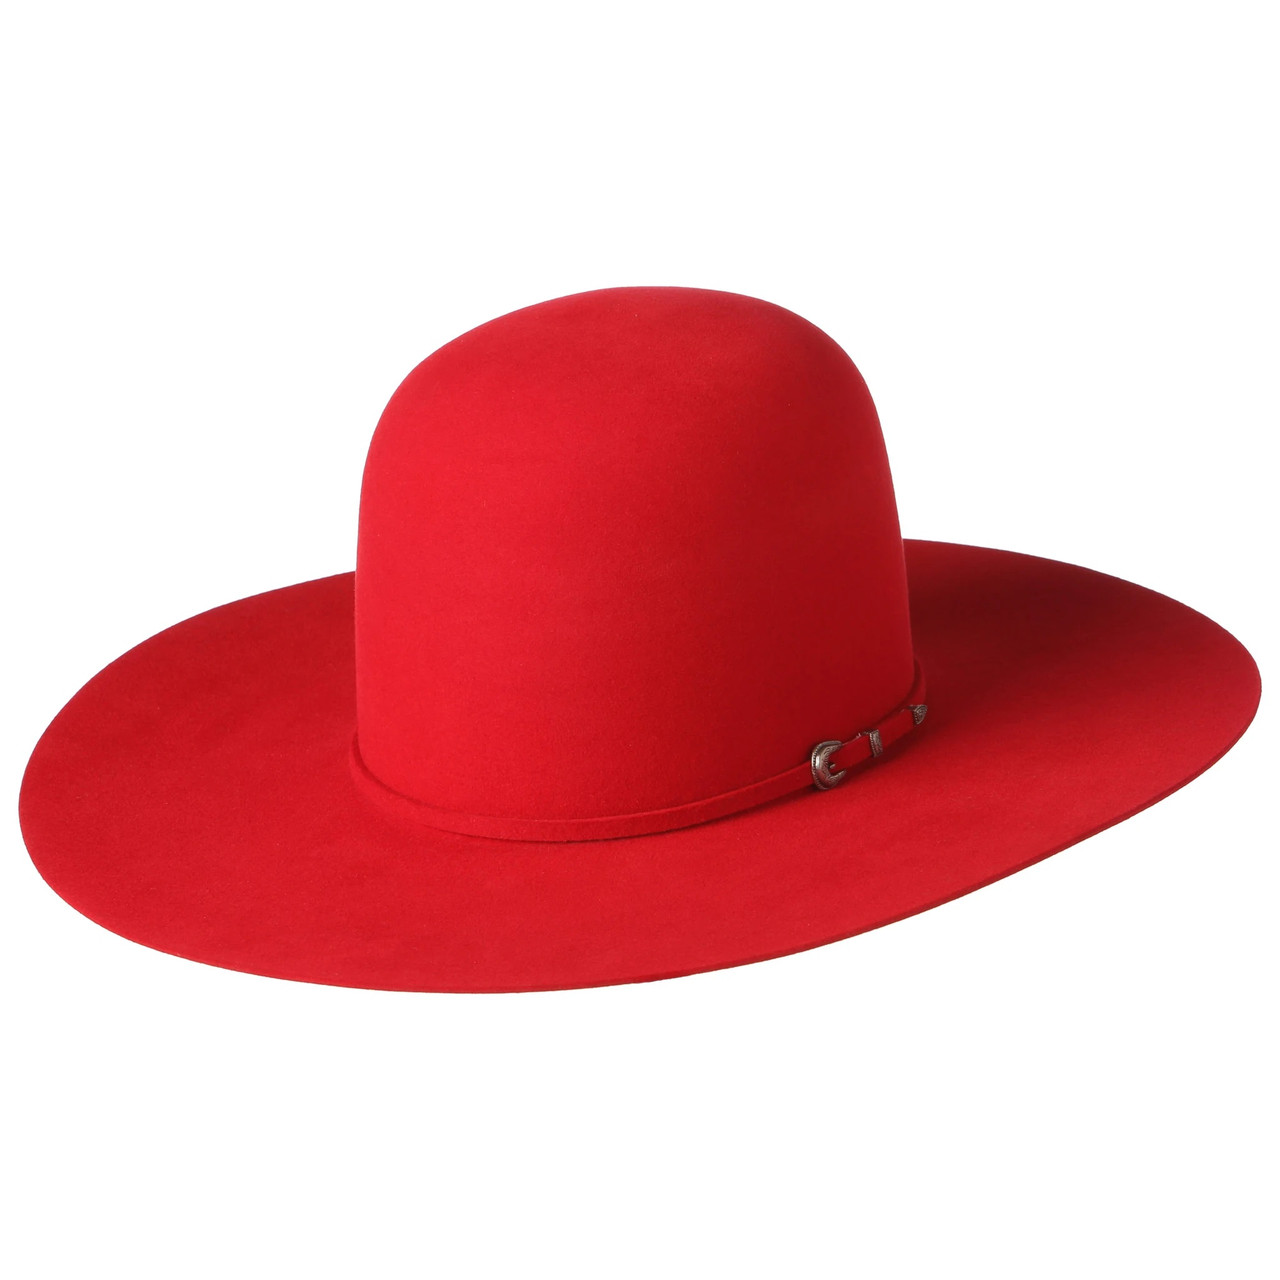 W. Alboum Felt Hats- Rodeo King - 7X - Red - Billy's Western Wear